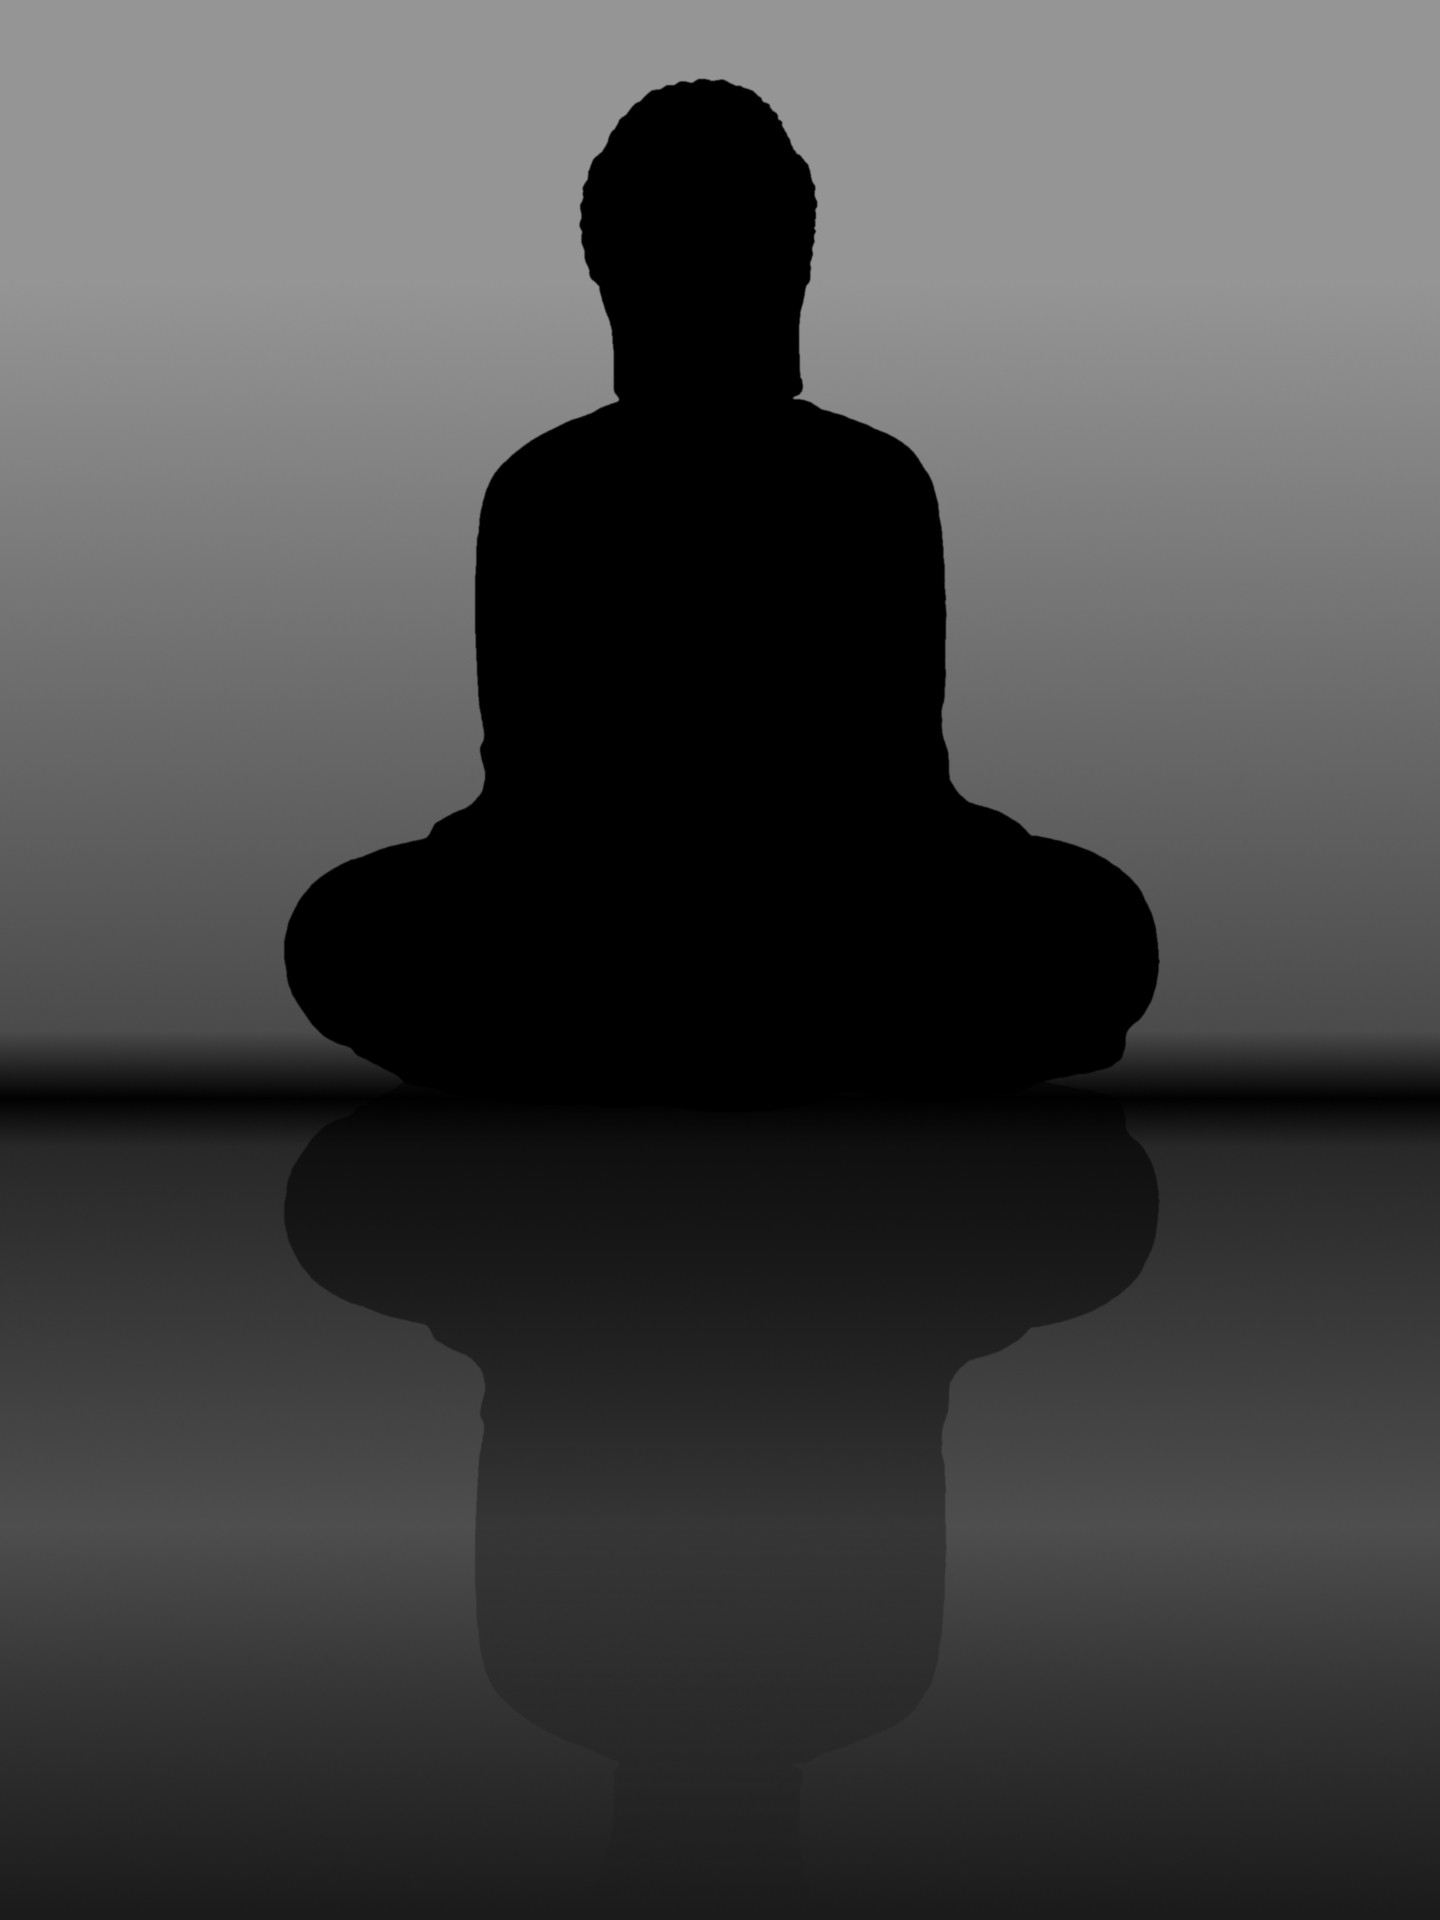 Buda,  Meditacija,  Ramus,  Poilsis,  Kontempliacija,  Taika,  Ramybė,  Ramybė,  Ramybė,  Tylus